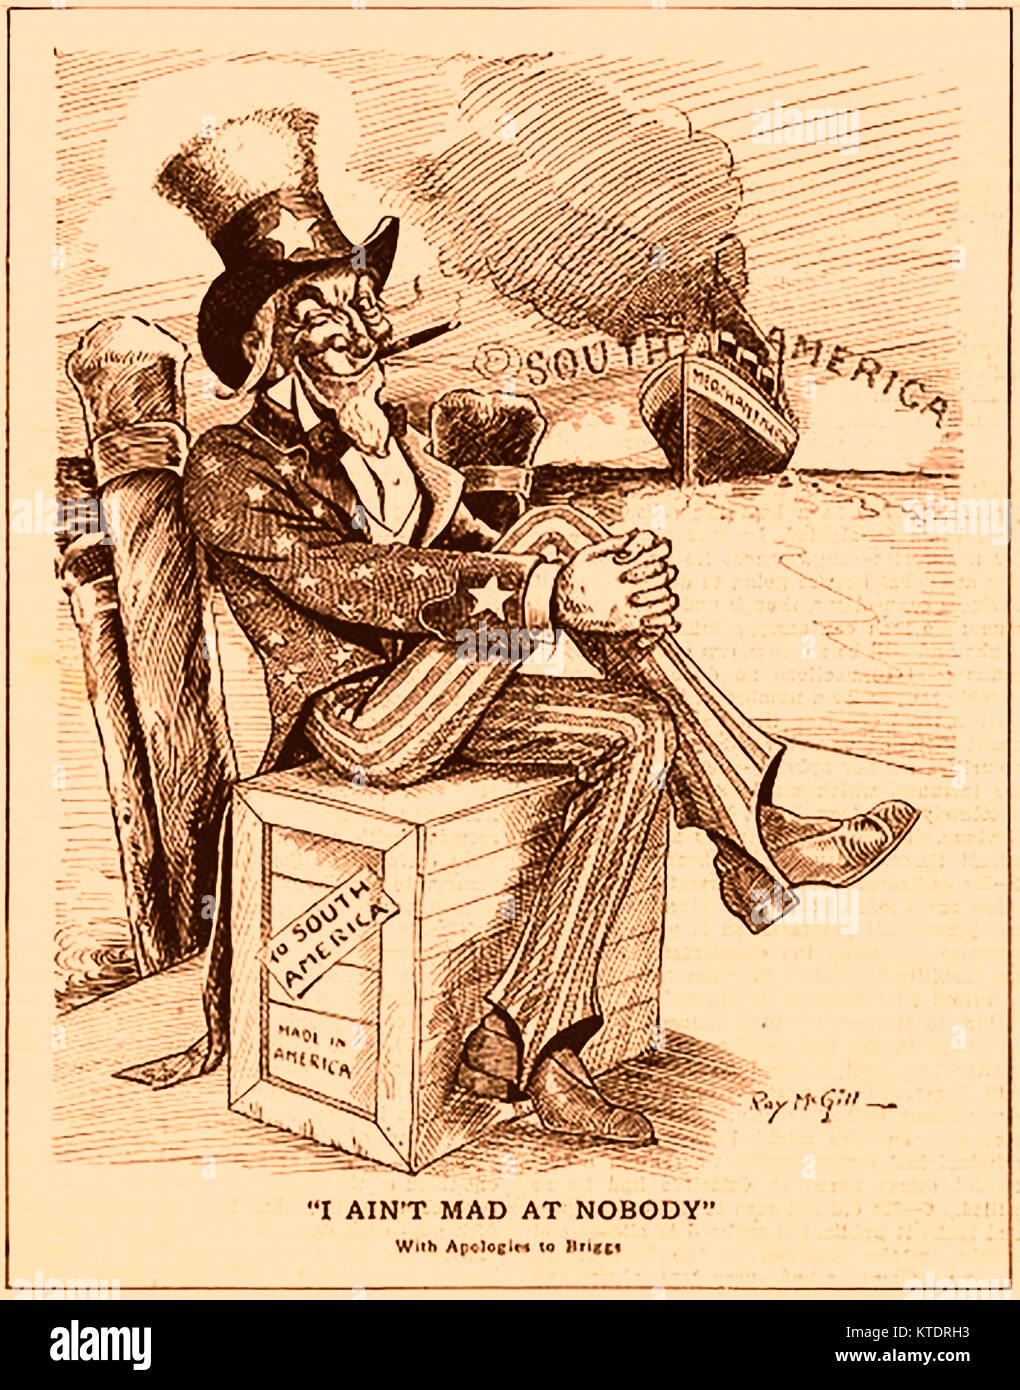 UNCLE SAM politische Karikatur von Ray McGill - Die personifikation von Amerika. Bereit für Argentinien, Südamerika zu Beginn des Ersten Weltkriegs emigrieren Stockfoto